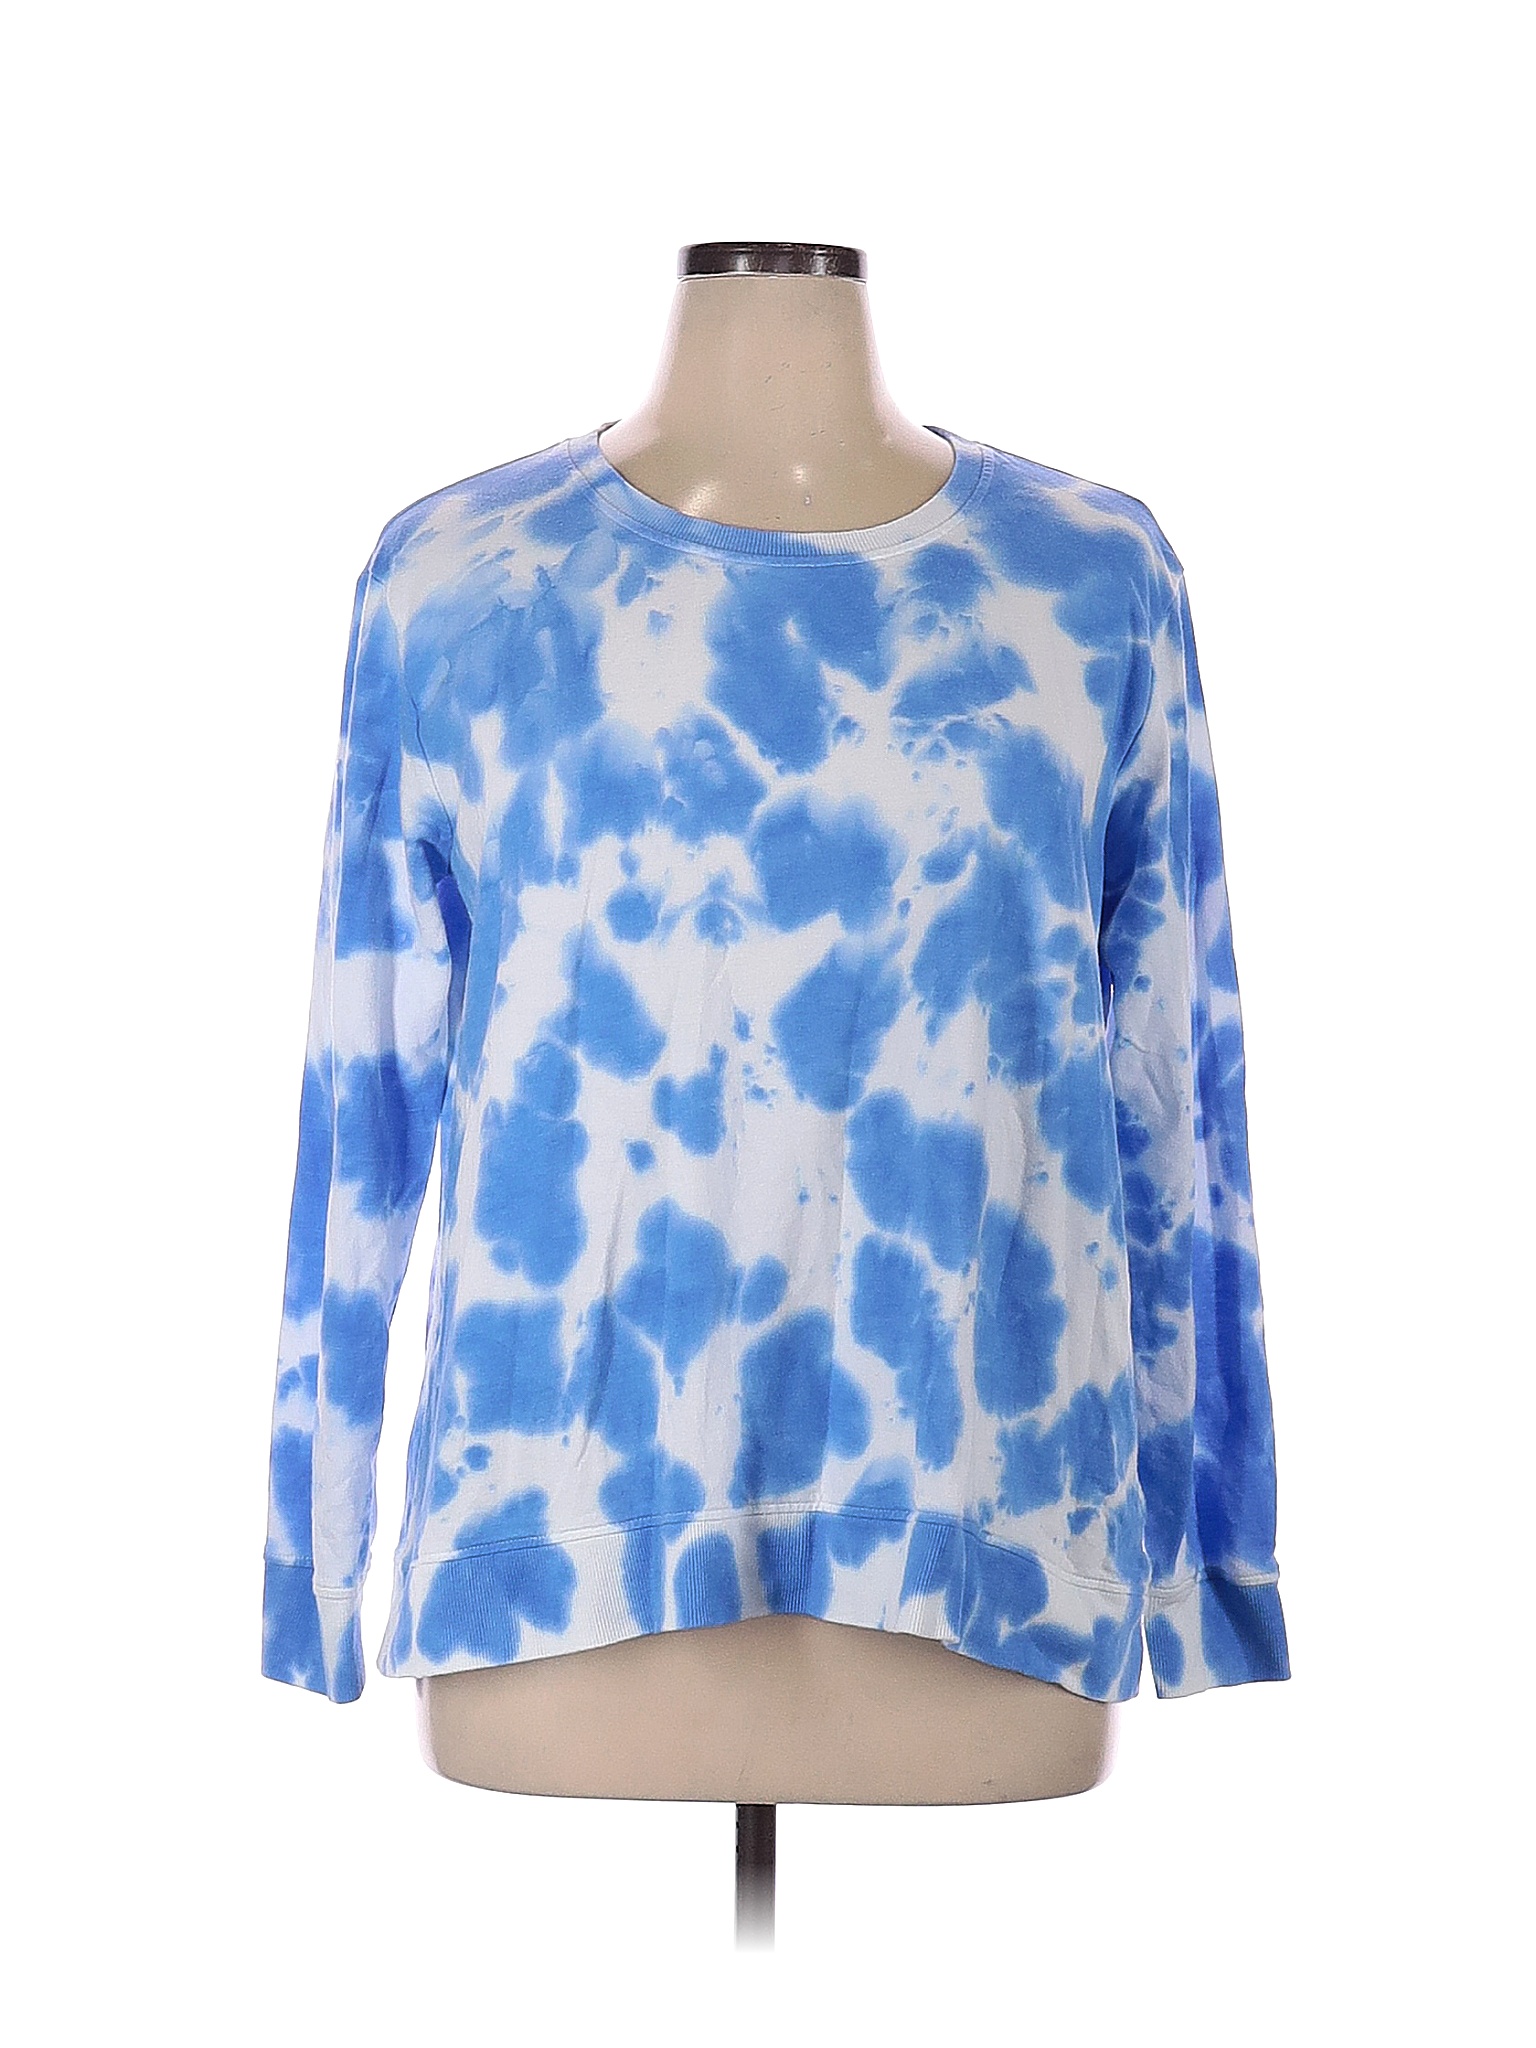 Jane and Delancey Tie-dye Blue Sweatshirt Size XL - 64% off | thredUP